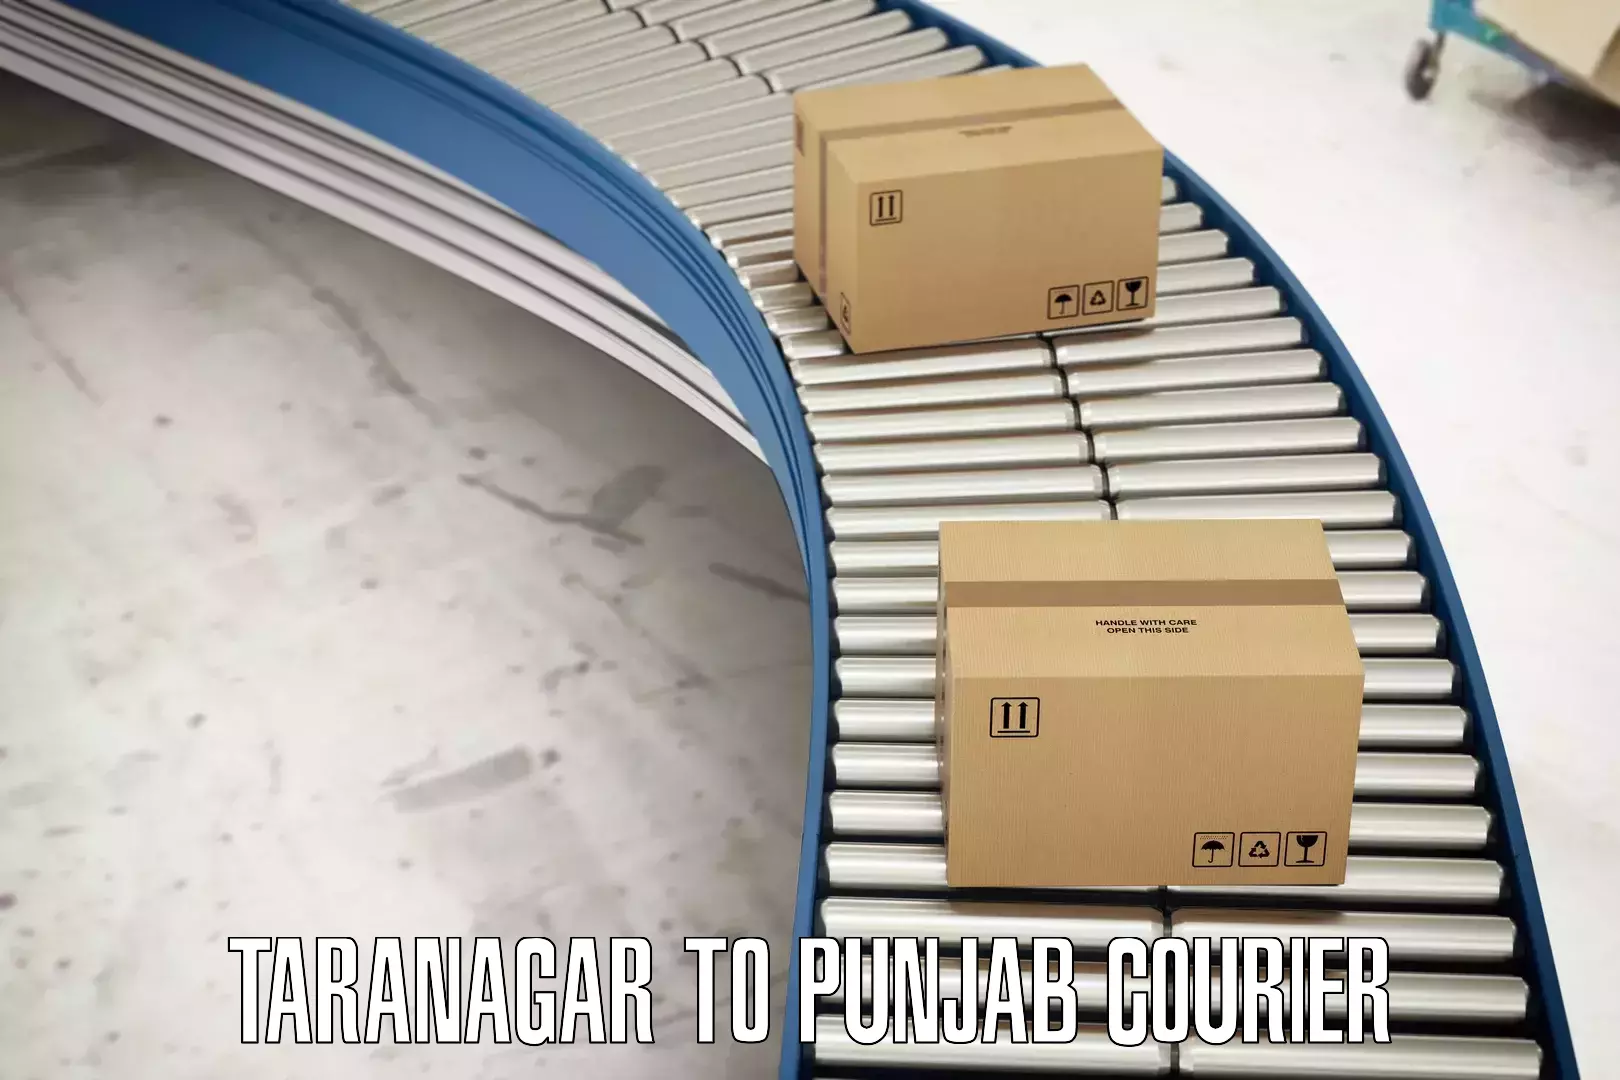 Trackable shipping service Taranagar to Mohali